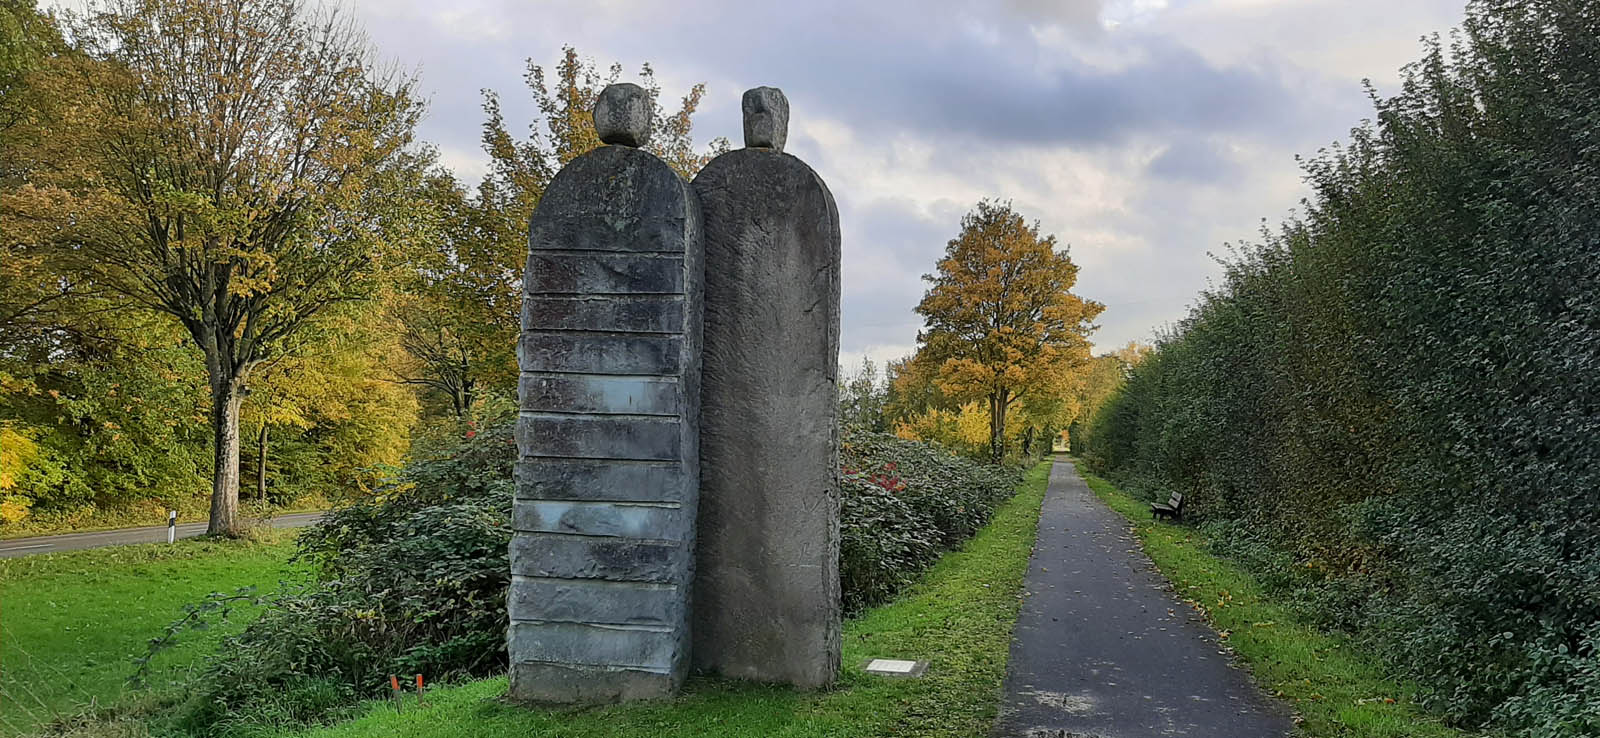 Zwei Steinskulpturen links am Radweg